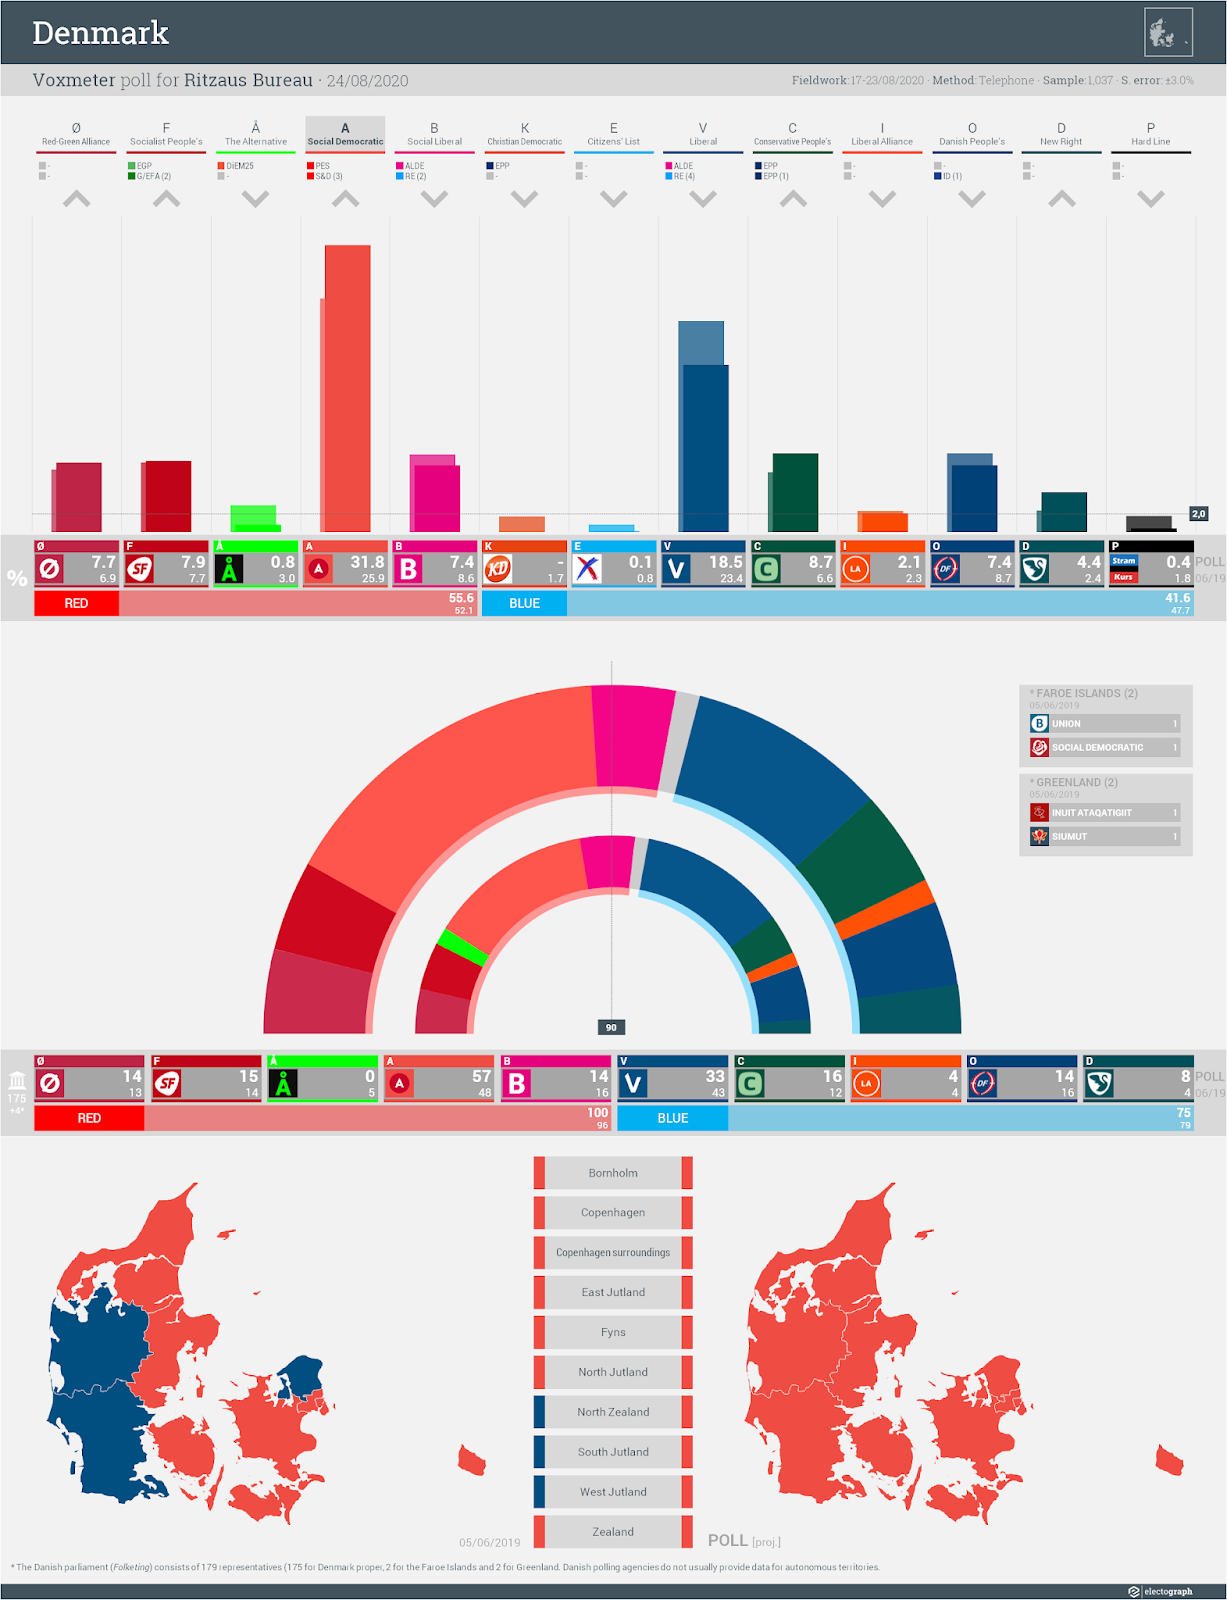 DENMARK: Voxmeter poll chart for Ritzaus Bureau, 24 August 2020